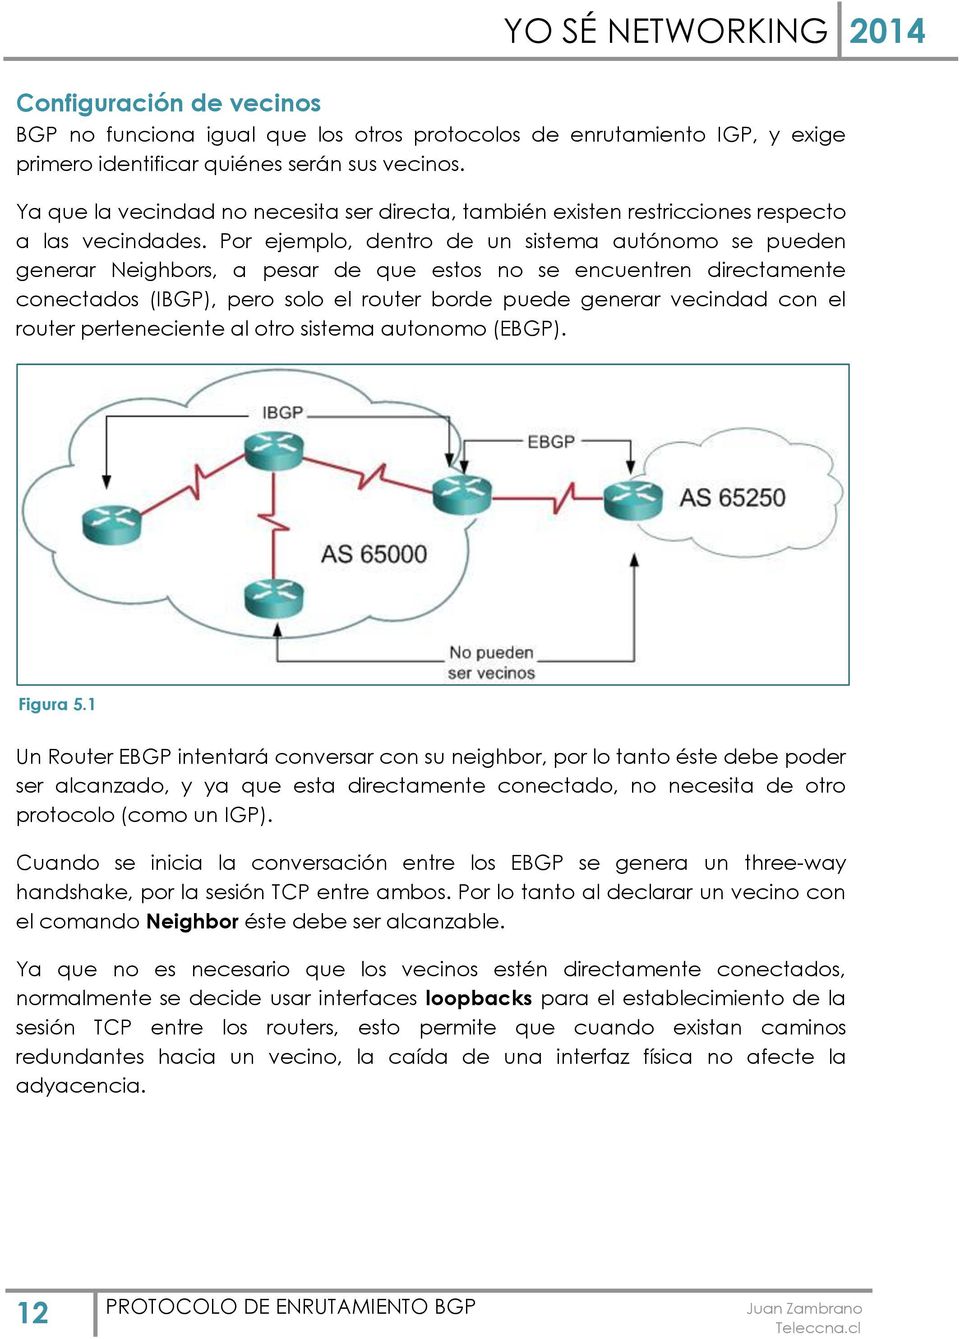 Por ejemplo, dentro de un sistema autónomo se pueden generar Neighbors, a pesar de que estos no se encuentren directamente conectados (IBGP), pero solo el router borde puede generar vecindad con el